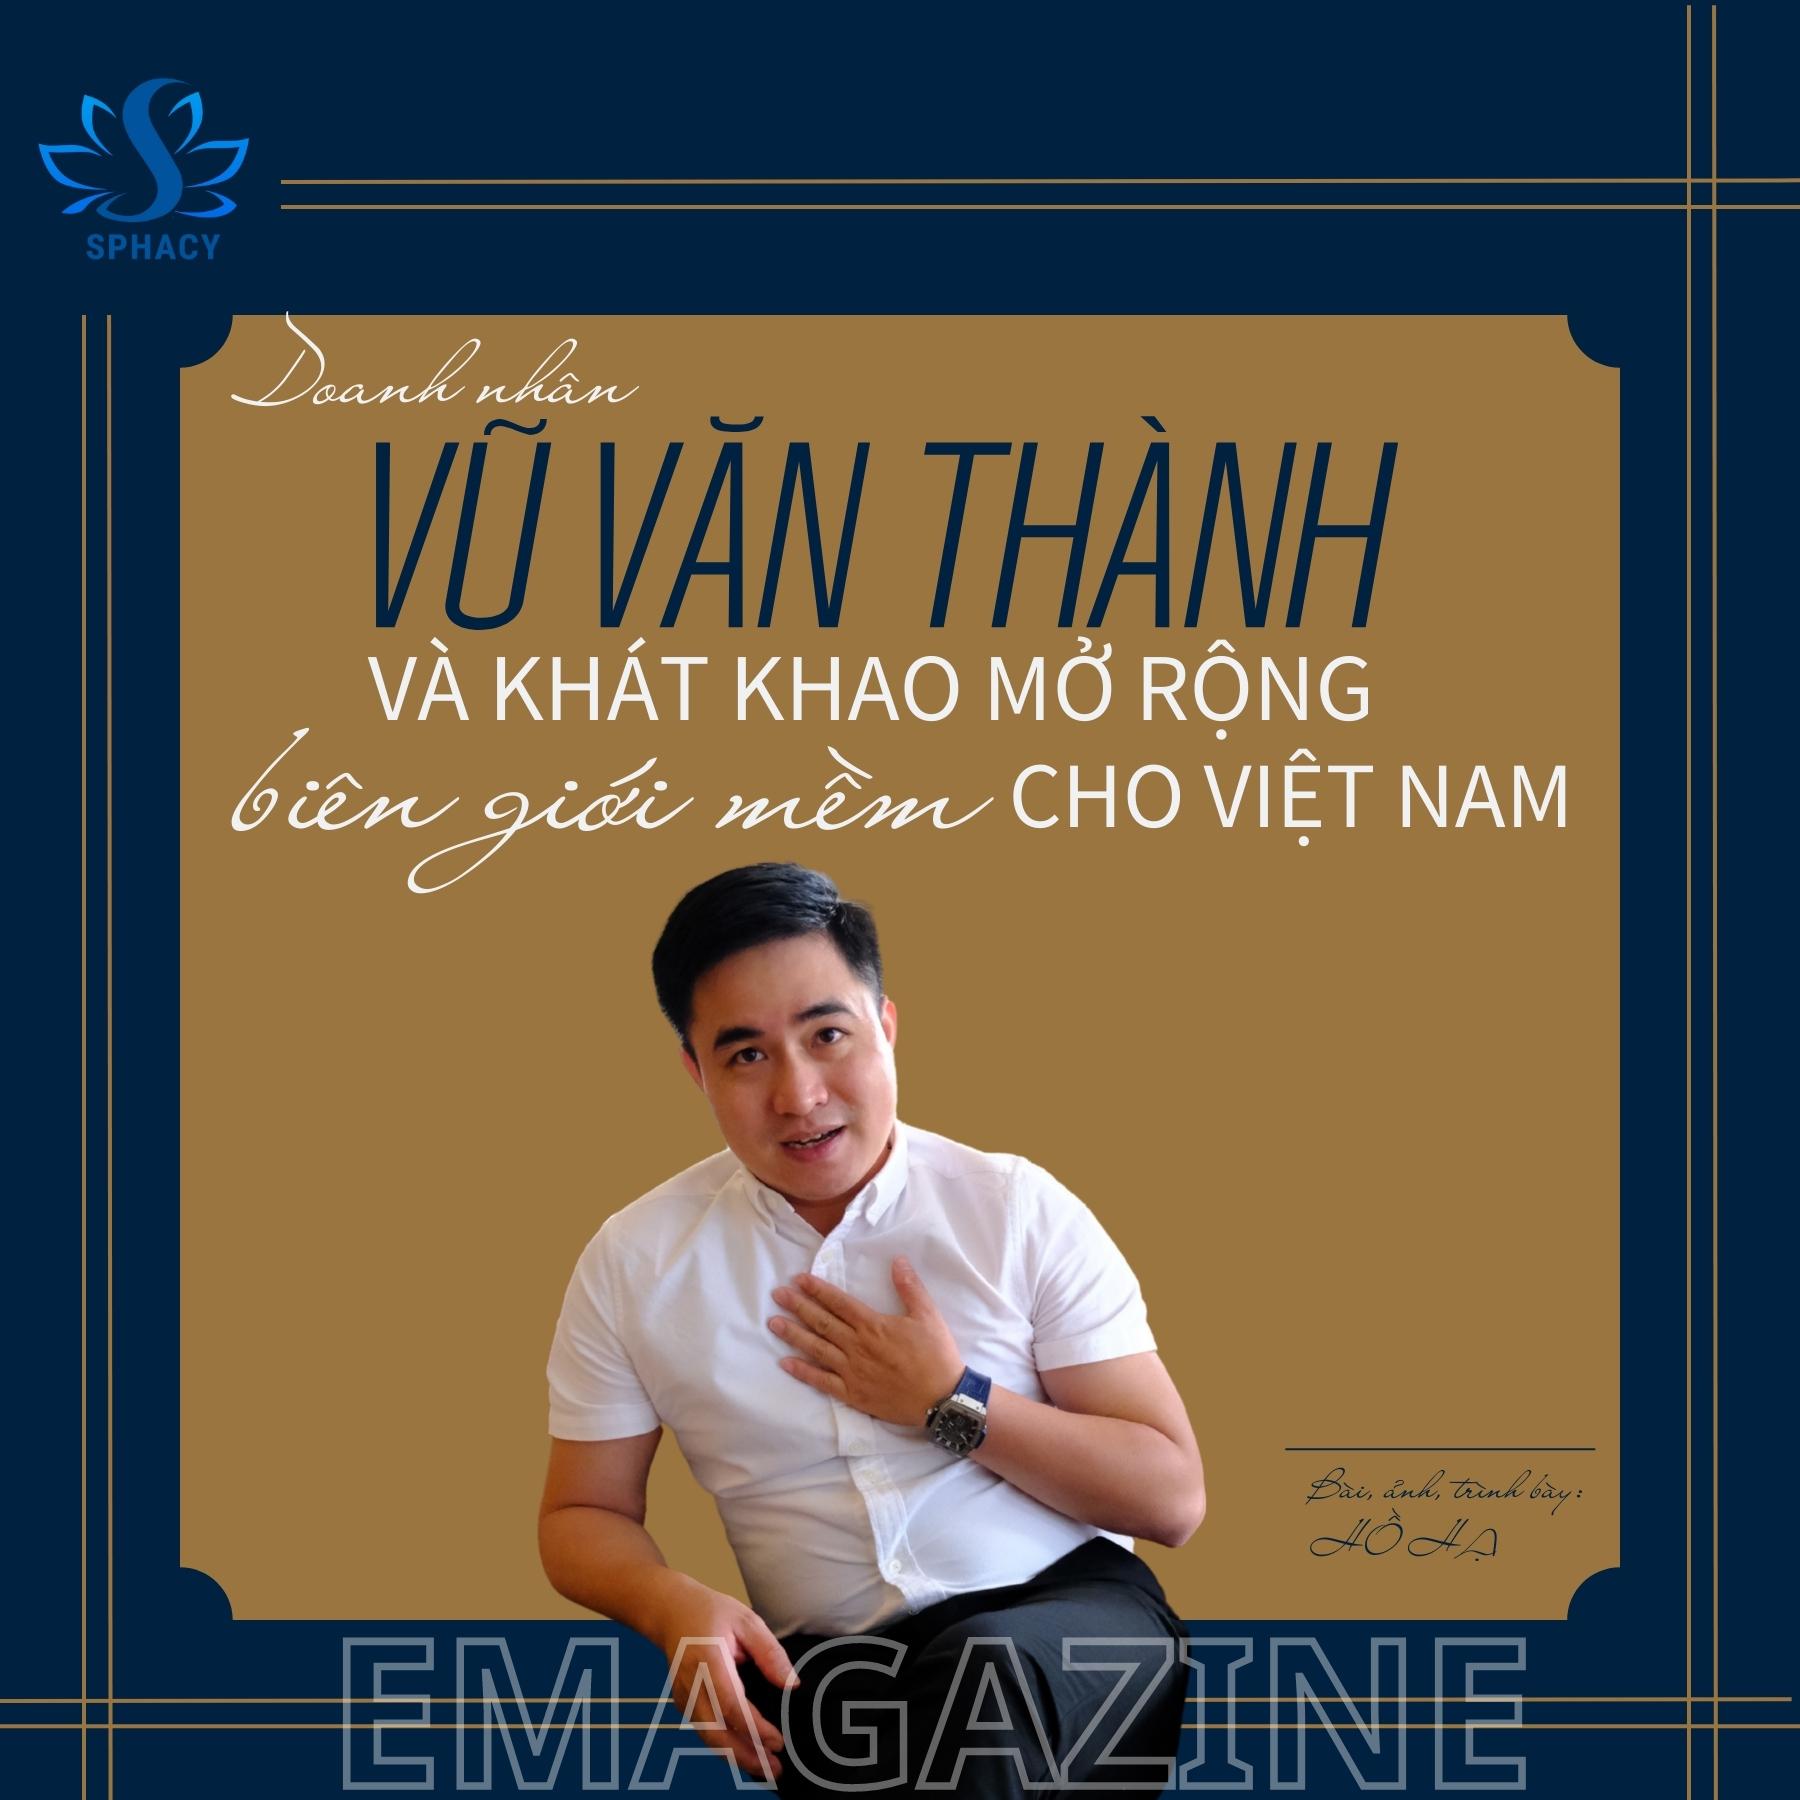 Chủ tịch SPHACY Vũ Văn Thành và khát khao mở rộng biên giới mềm cho Việt Nam